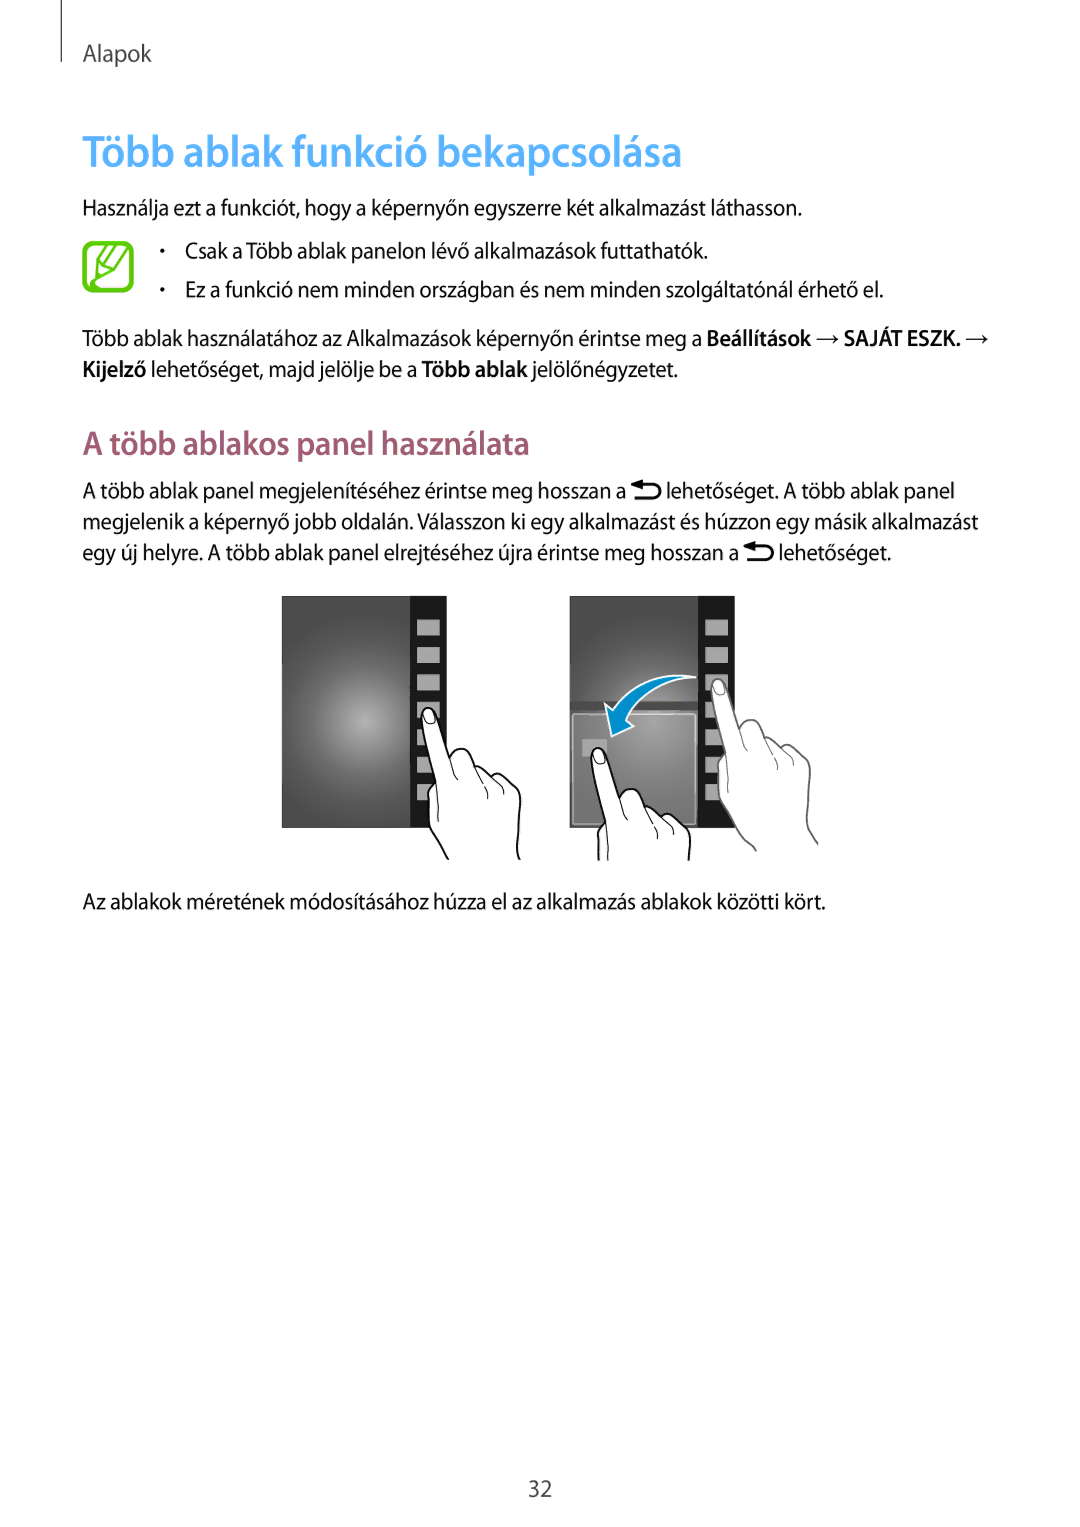 Samsung GT-I9515ZSAATO, GT-I9515ZKAPLS, GT-I9515ZWAXEO manual Több ablak funkció bekapcsolása, Több ablakos panel használata 